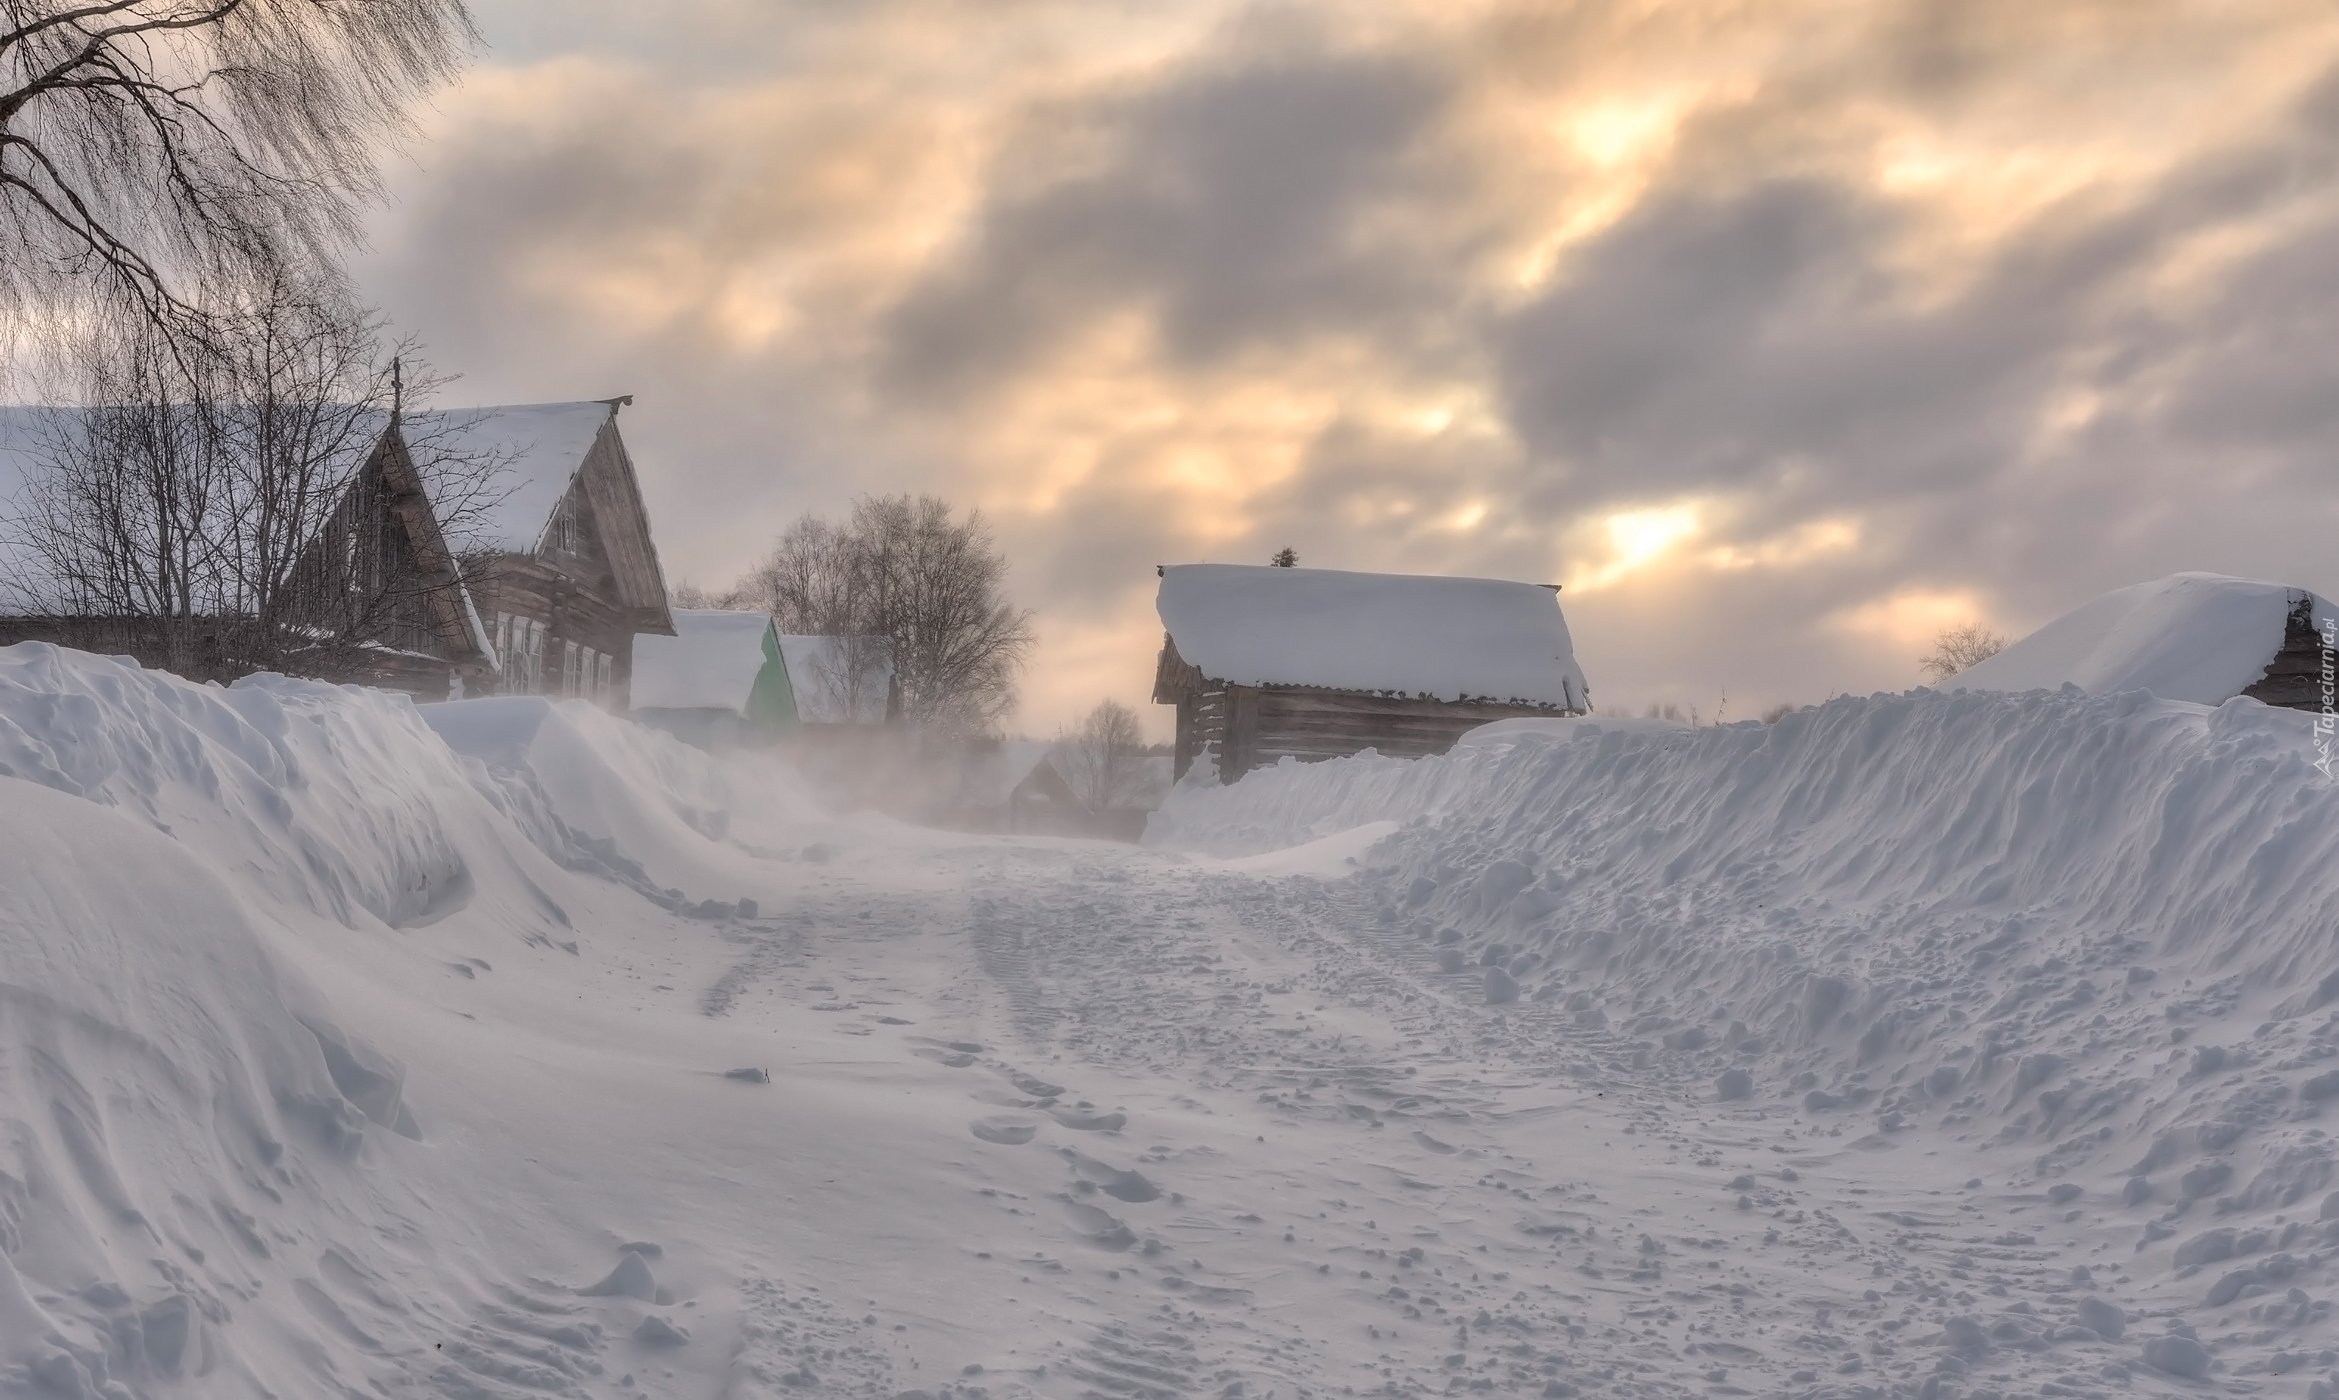 Село занесенное снегом оттаивает по немногу. Деревня в снегу. Сугробы в деревне. Зима в деревне. Снегопад в деревне.